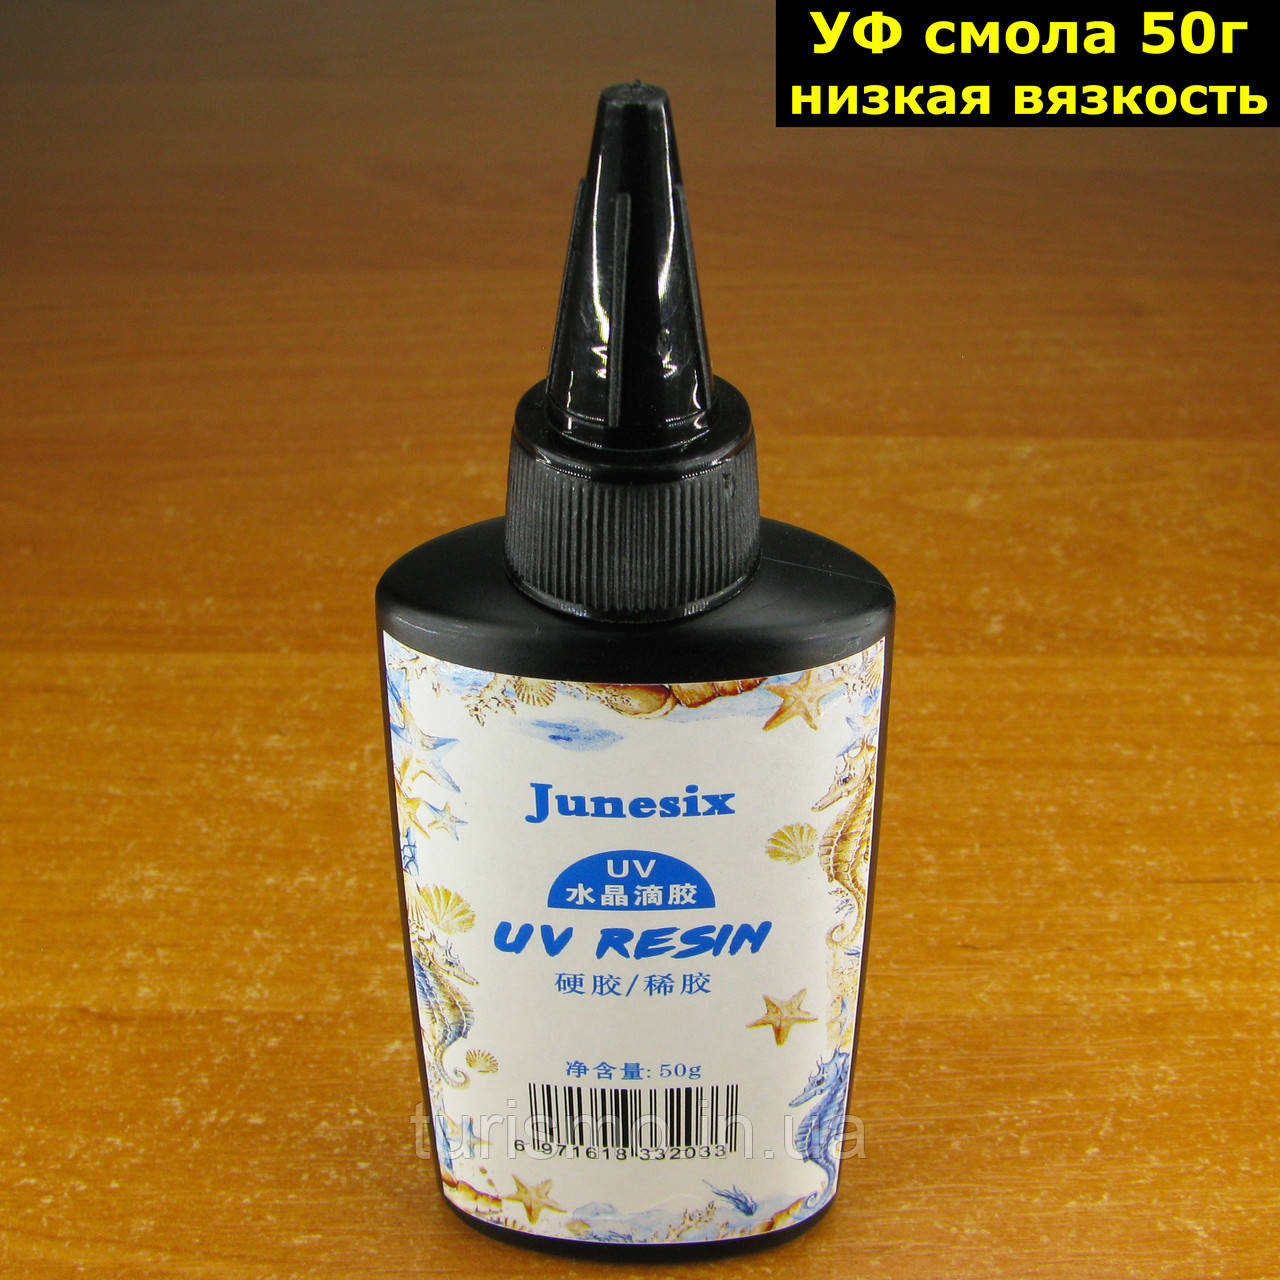 Смола отверждаемая ультрафіолетом низької в'язкості 50г (УФ смола) UV Resin прозора епоксидна Junesix